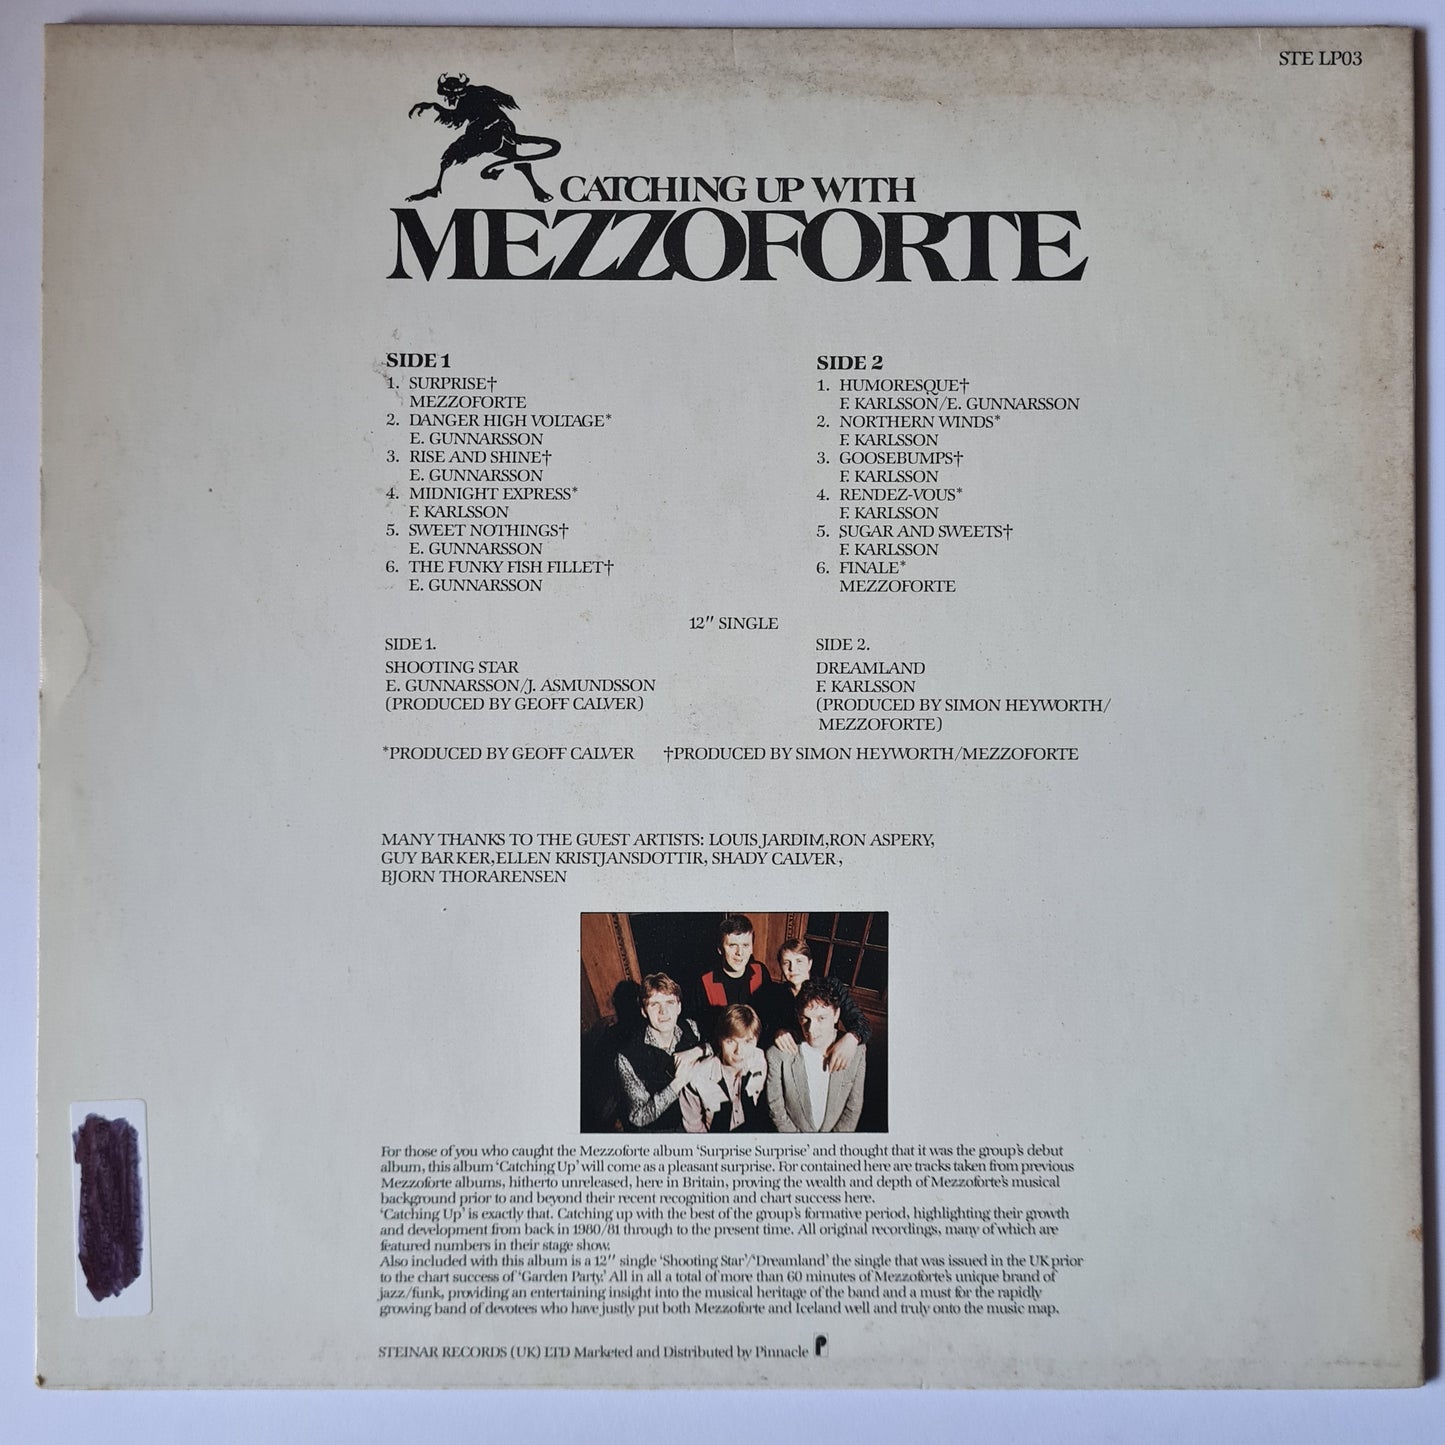 Mezzoforte ‎– Catching Up With Mezzoforte (Early Recordings)- 1983- Vinyl Record